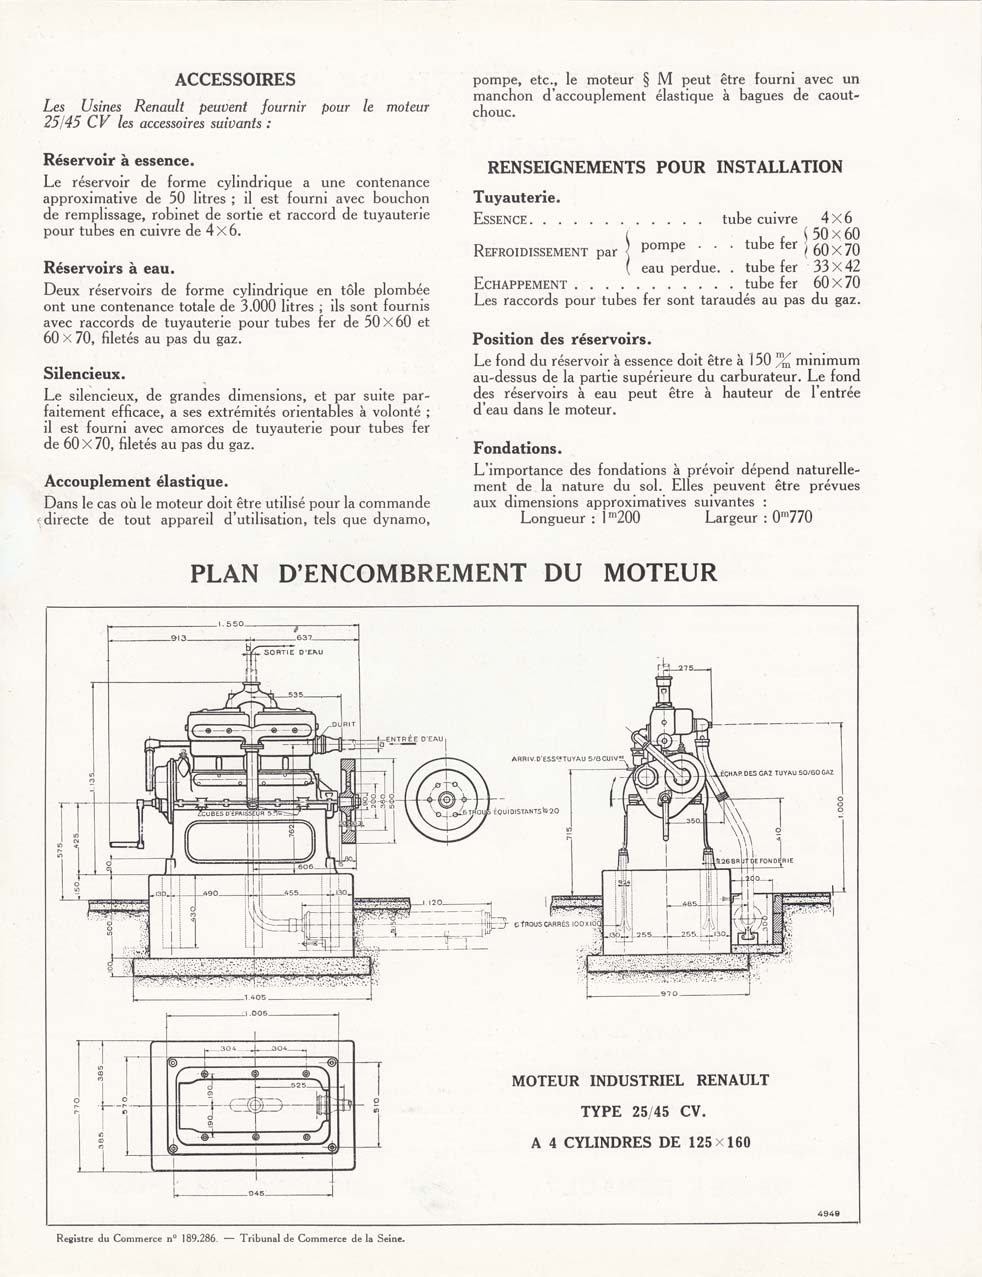 RENAULT moteurs fixes  - Page 2 2254